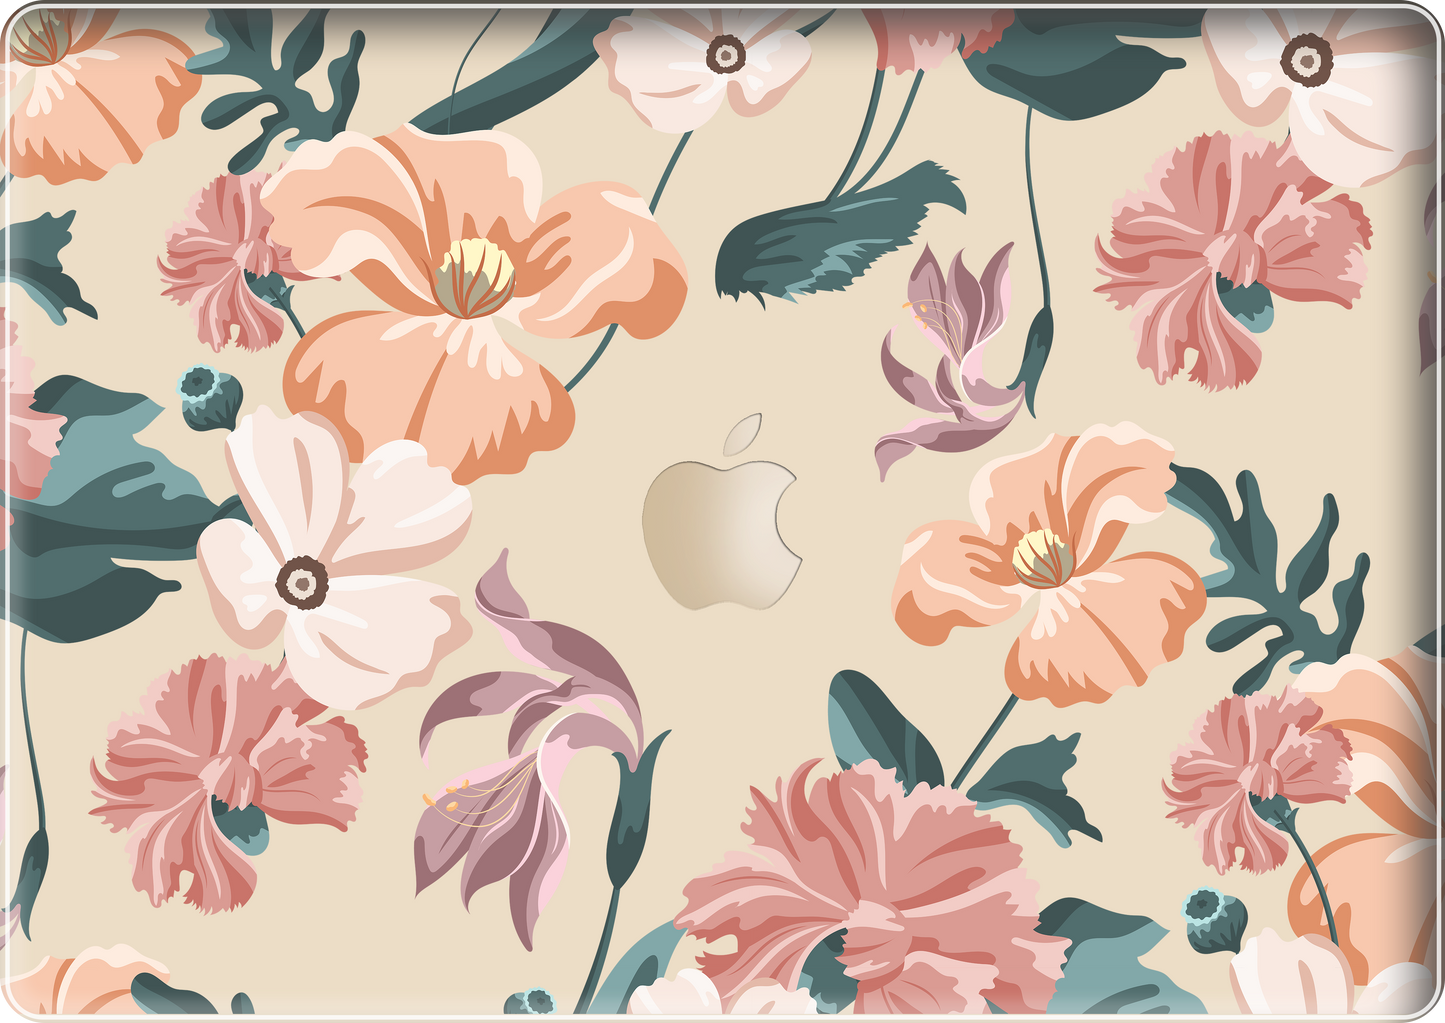 MacBook Snap Case - Botanical Garden 1.0